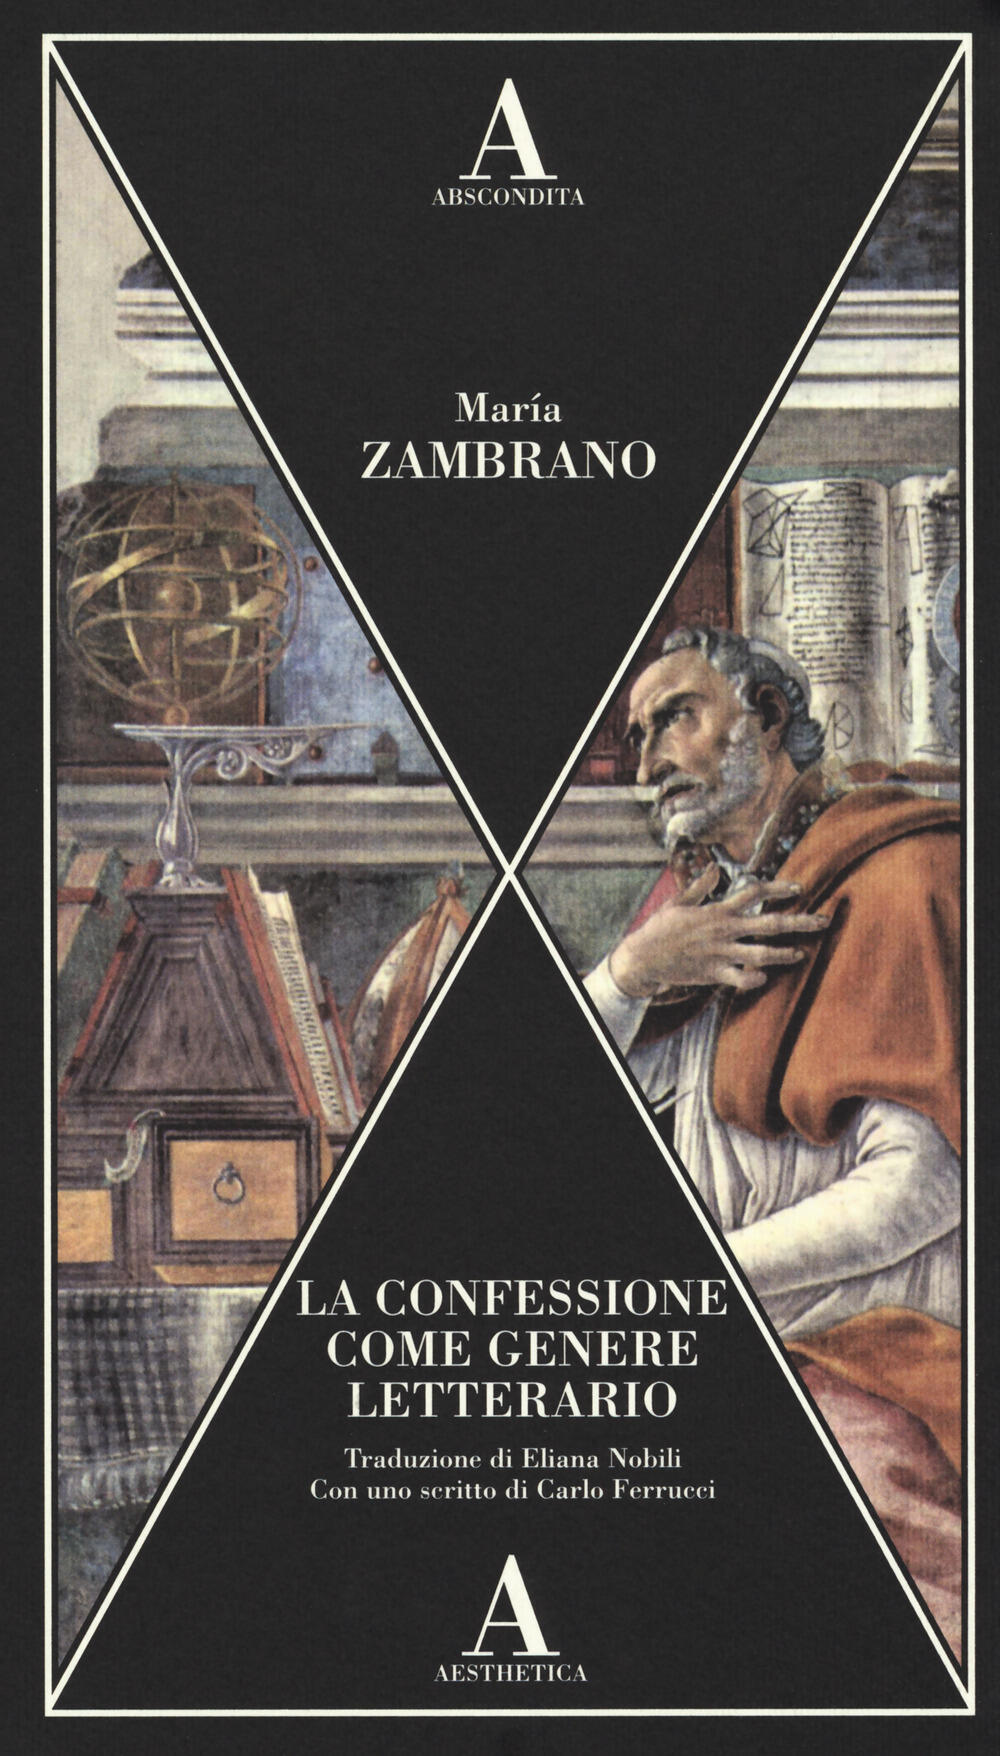 La confessione e genere letterario Mar­a Zambrano Libro Abscondita Aesthetica